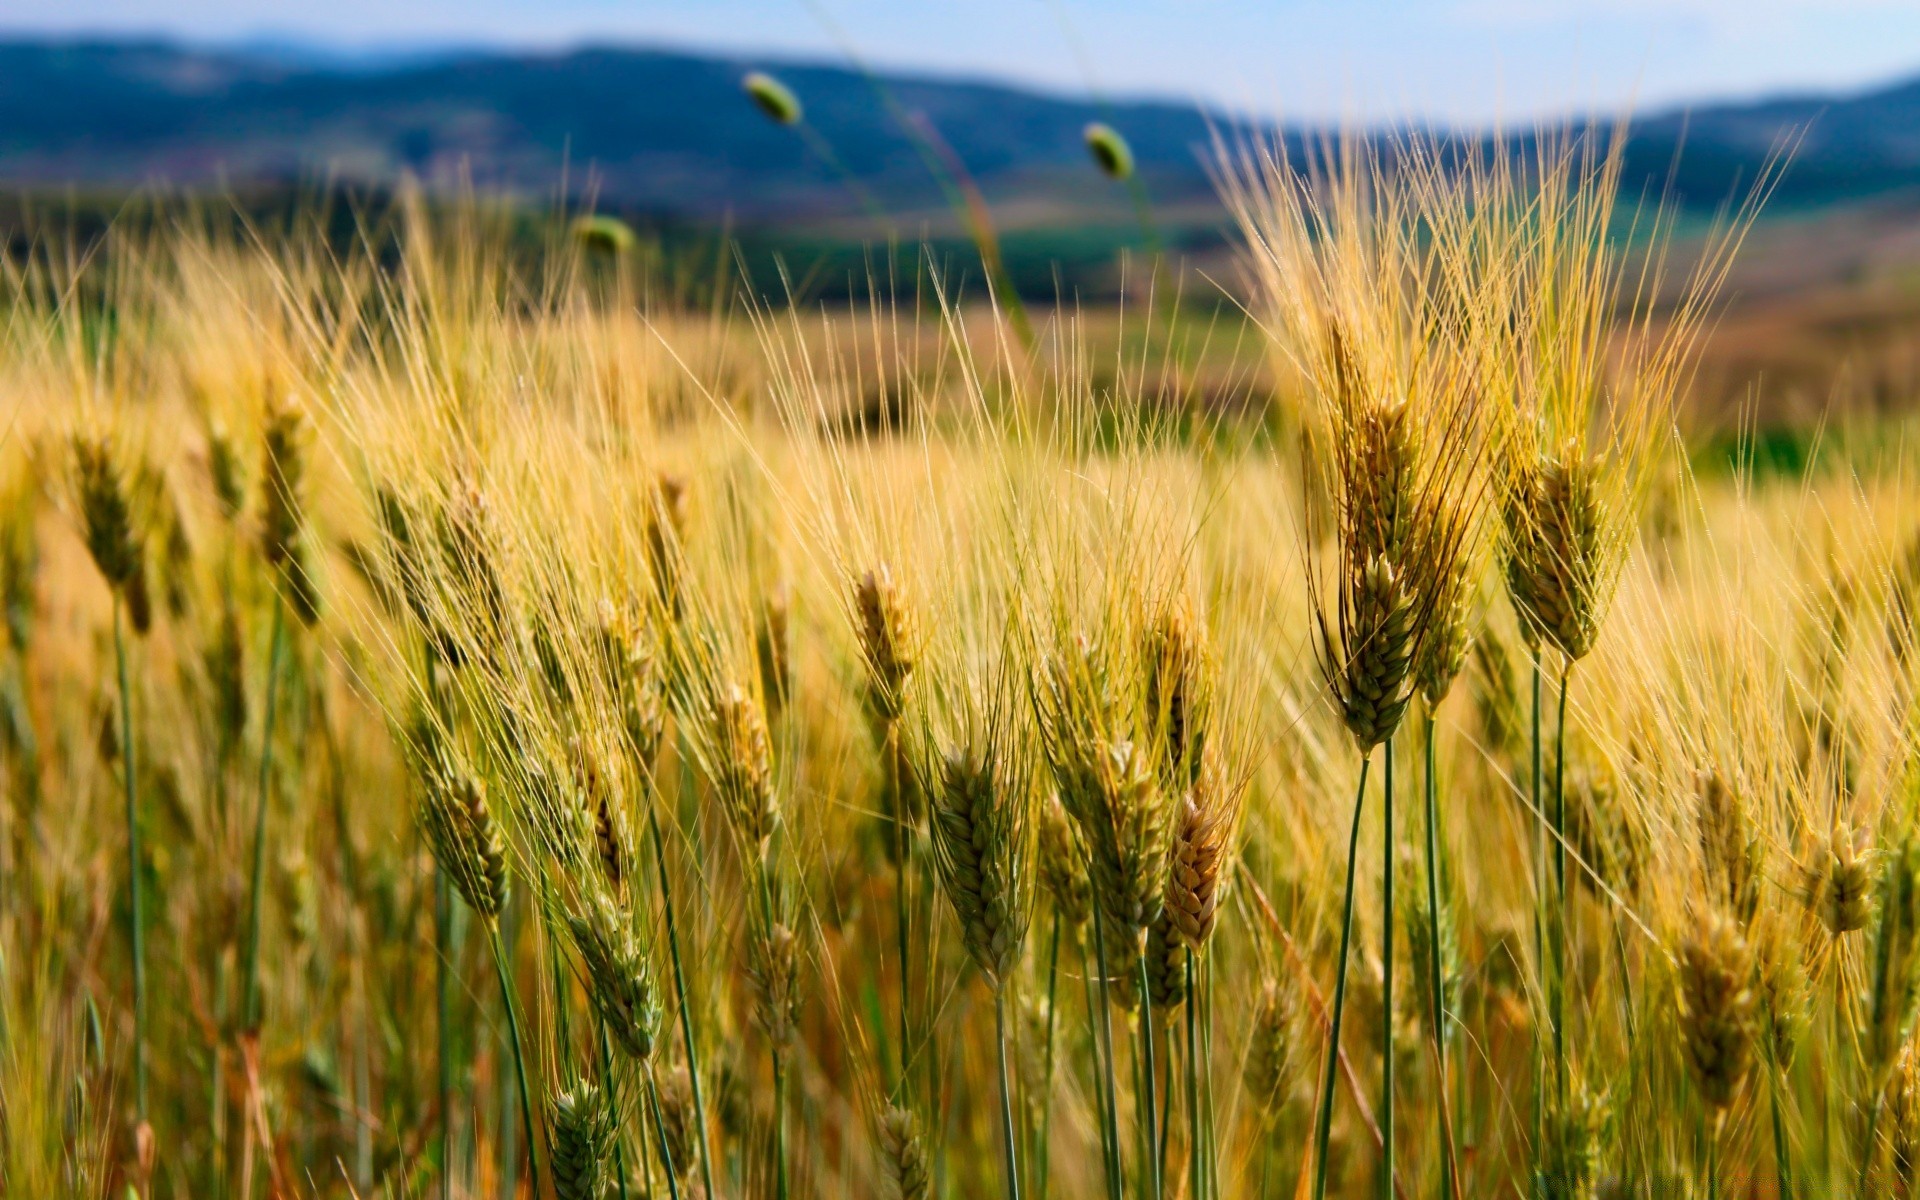 пейзажи хлопья пшеницы пастбище кукуруза сельских поле хлеб соломы рожь урожай ферма сельской местности семян сельское хозяйство лето ячмень сельхозугодия рост солнце